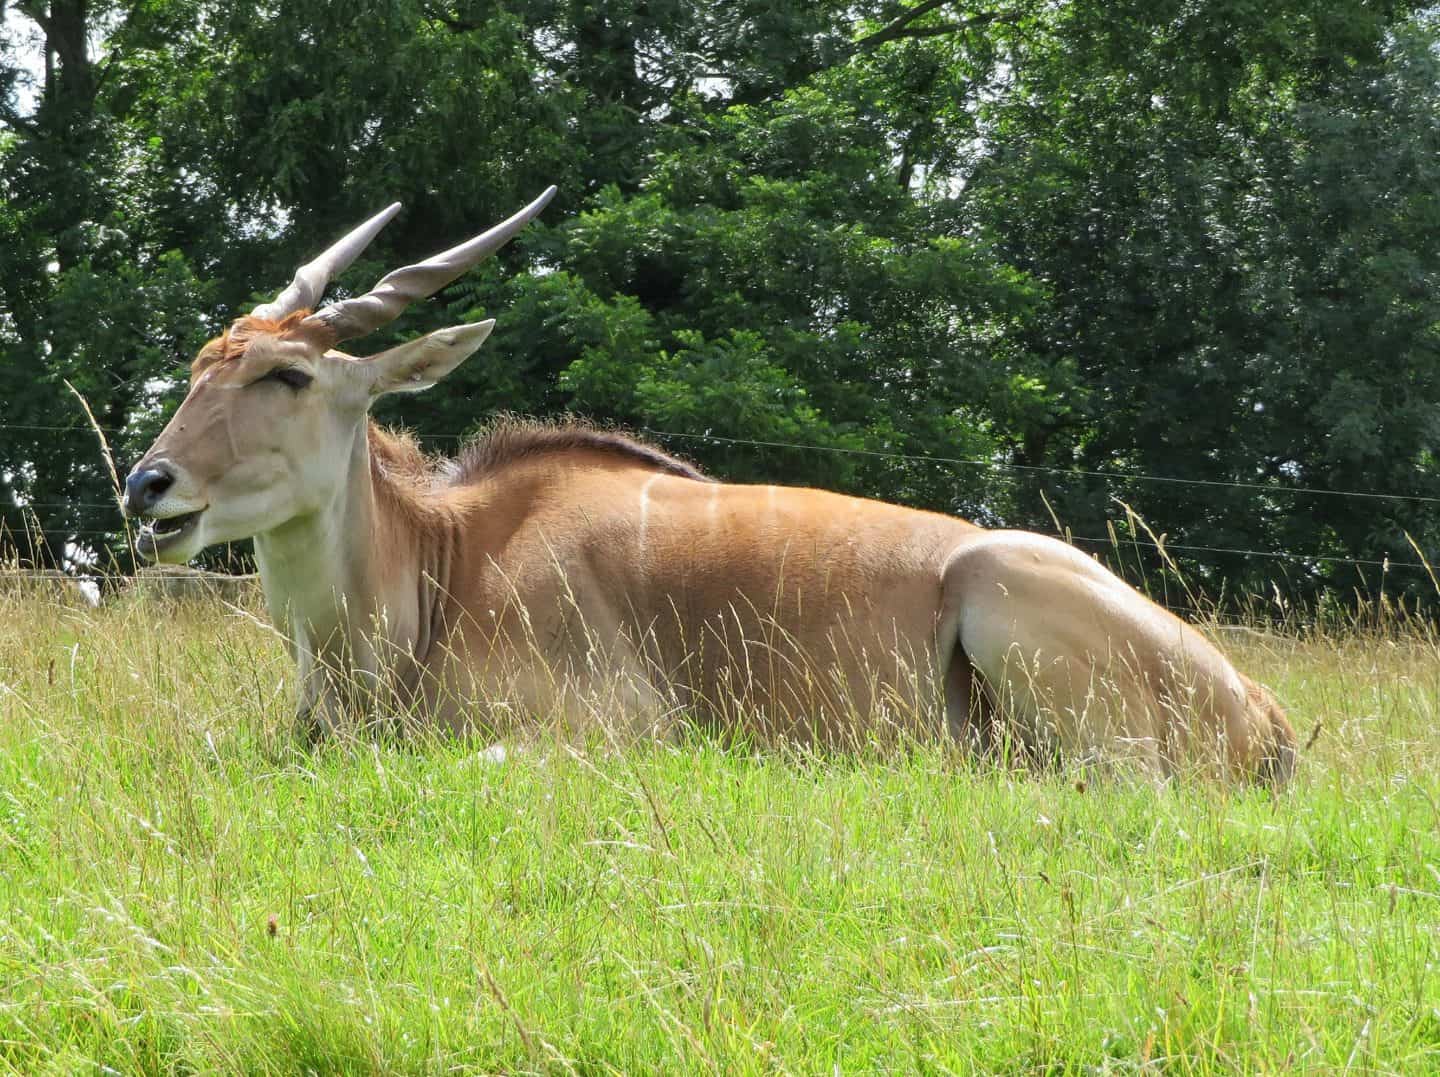 Onyx at Longleat Safari Park